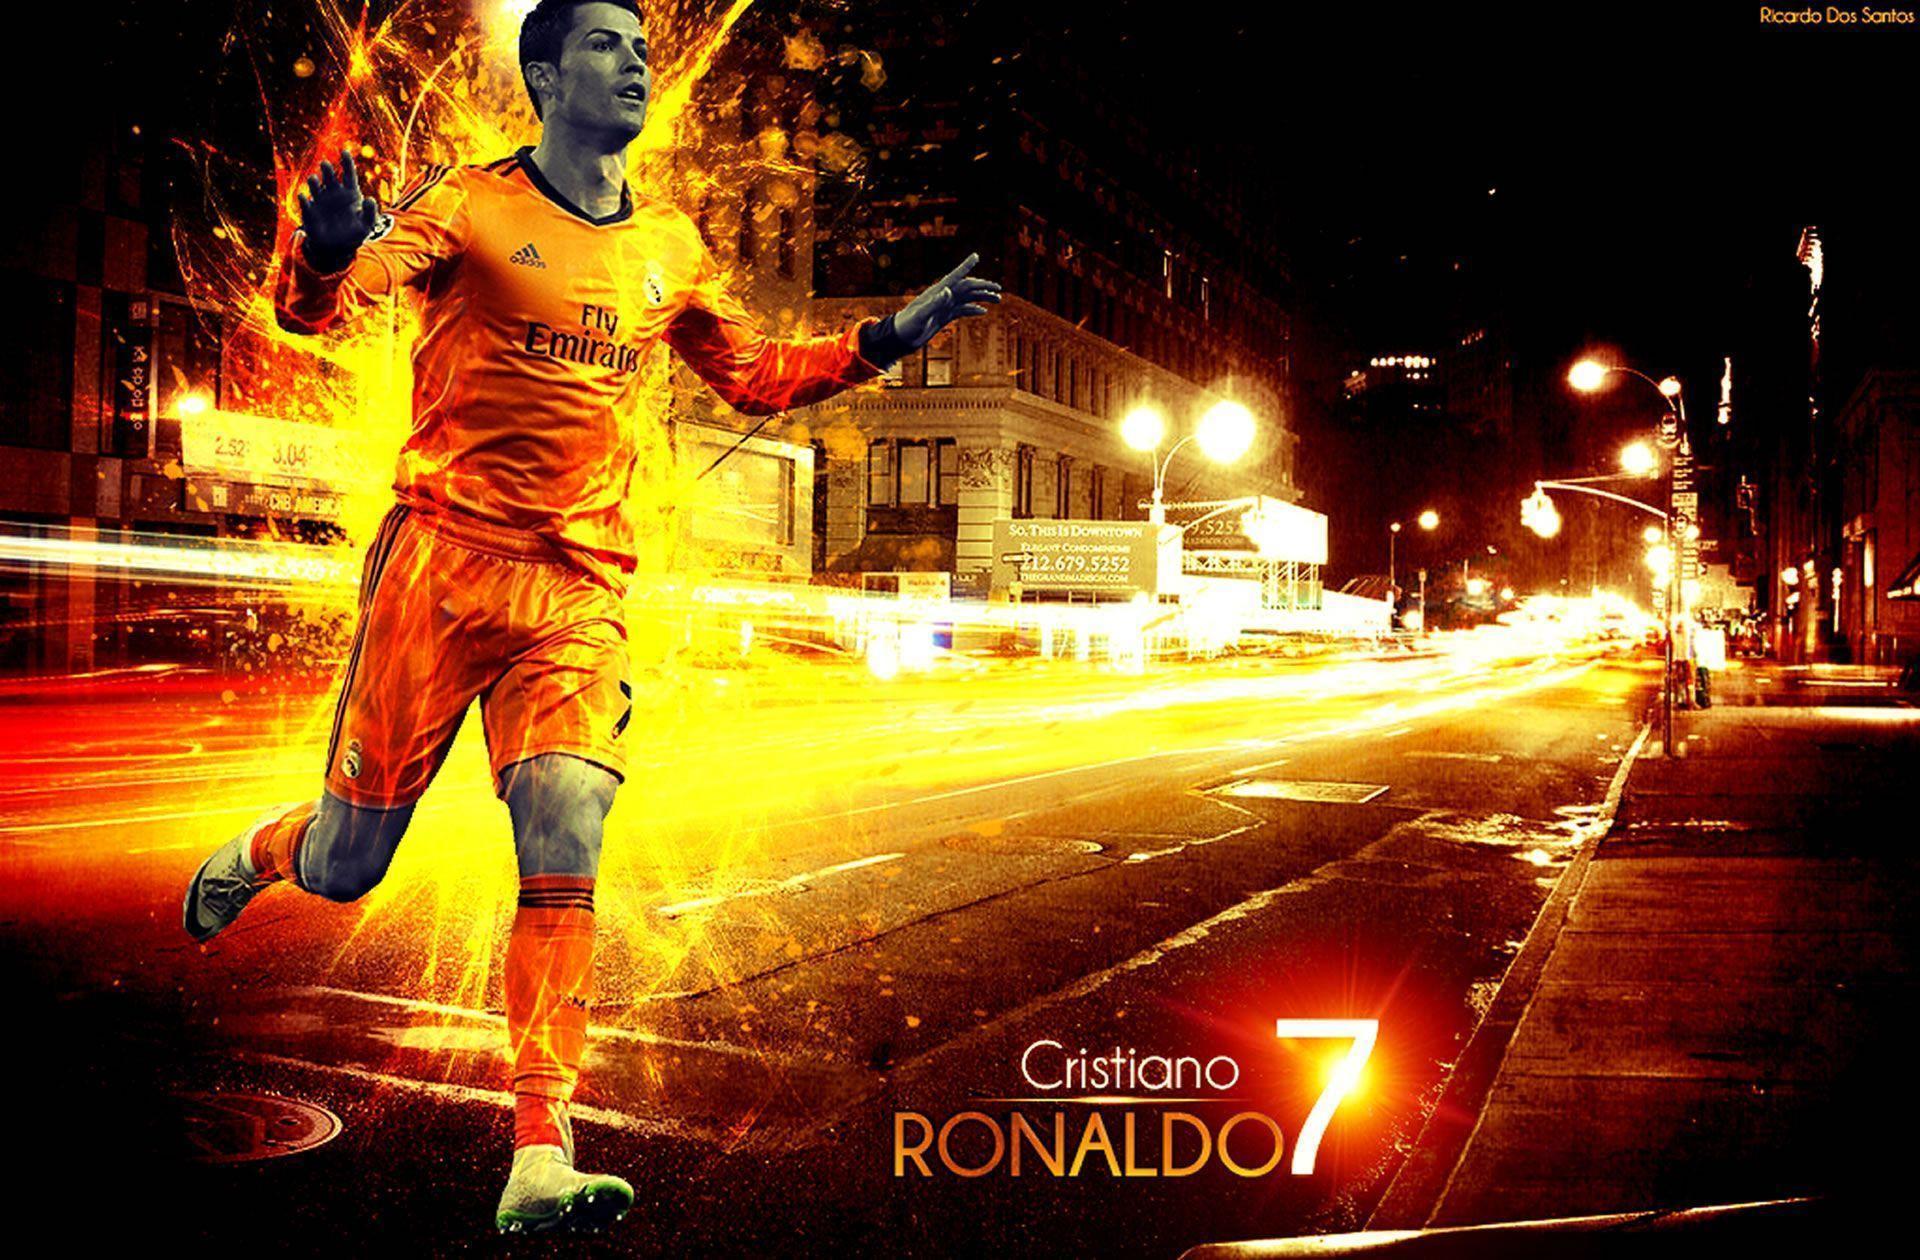 Cristiano Ronaldo wallpaper by Ricardo Dos Santos